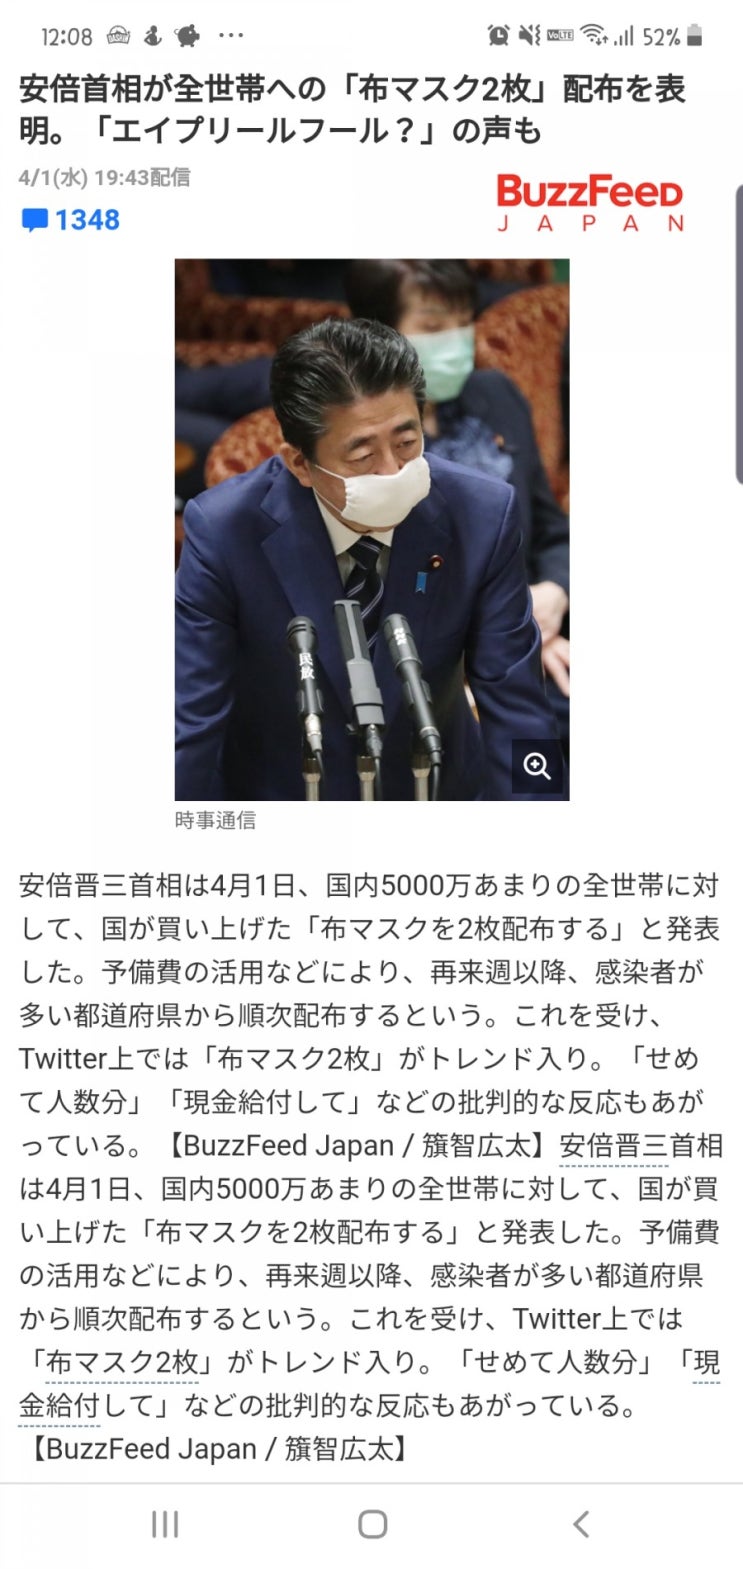 일본 코로나 대책 " 국민 전체에 마스크 2장 지급" 일본 현지 반응 및 일본 코로나 확진자